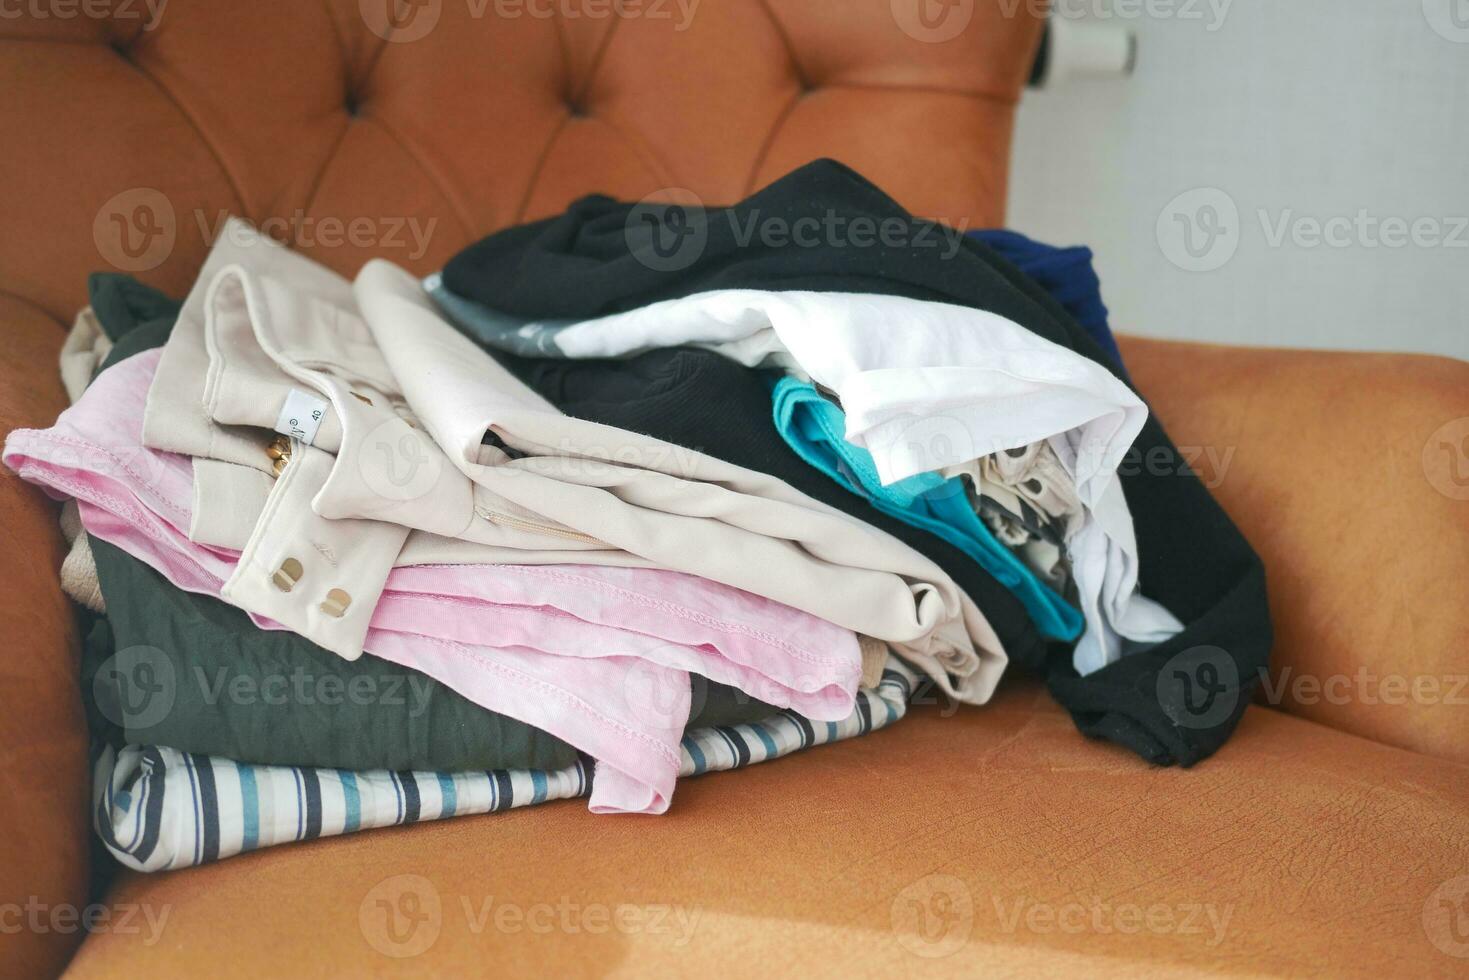 désordonné vêtements sur canapé à Accueil photo